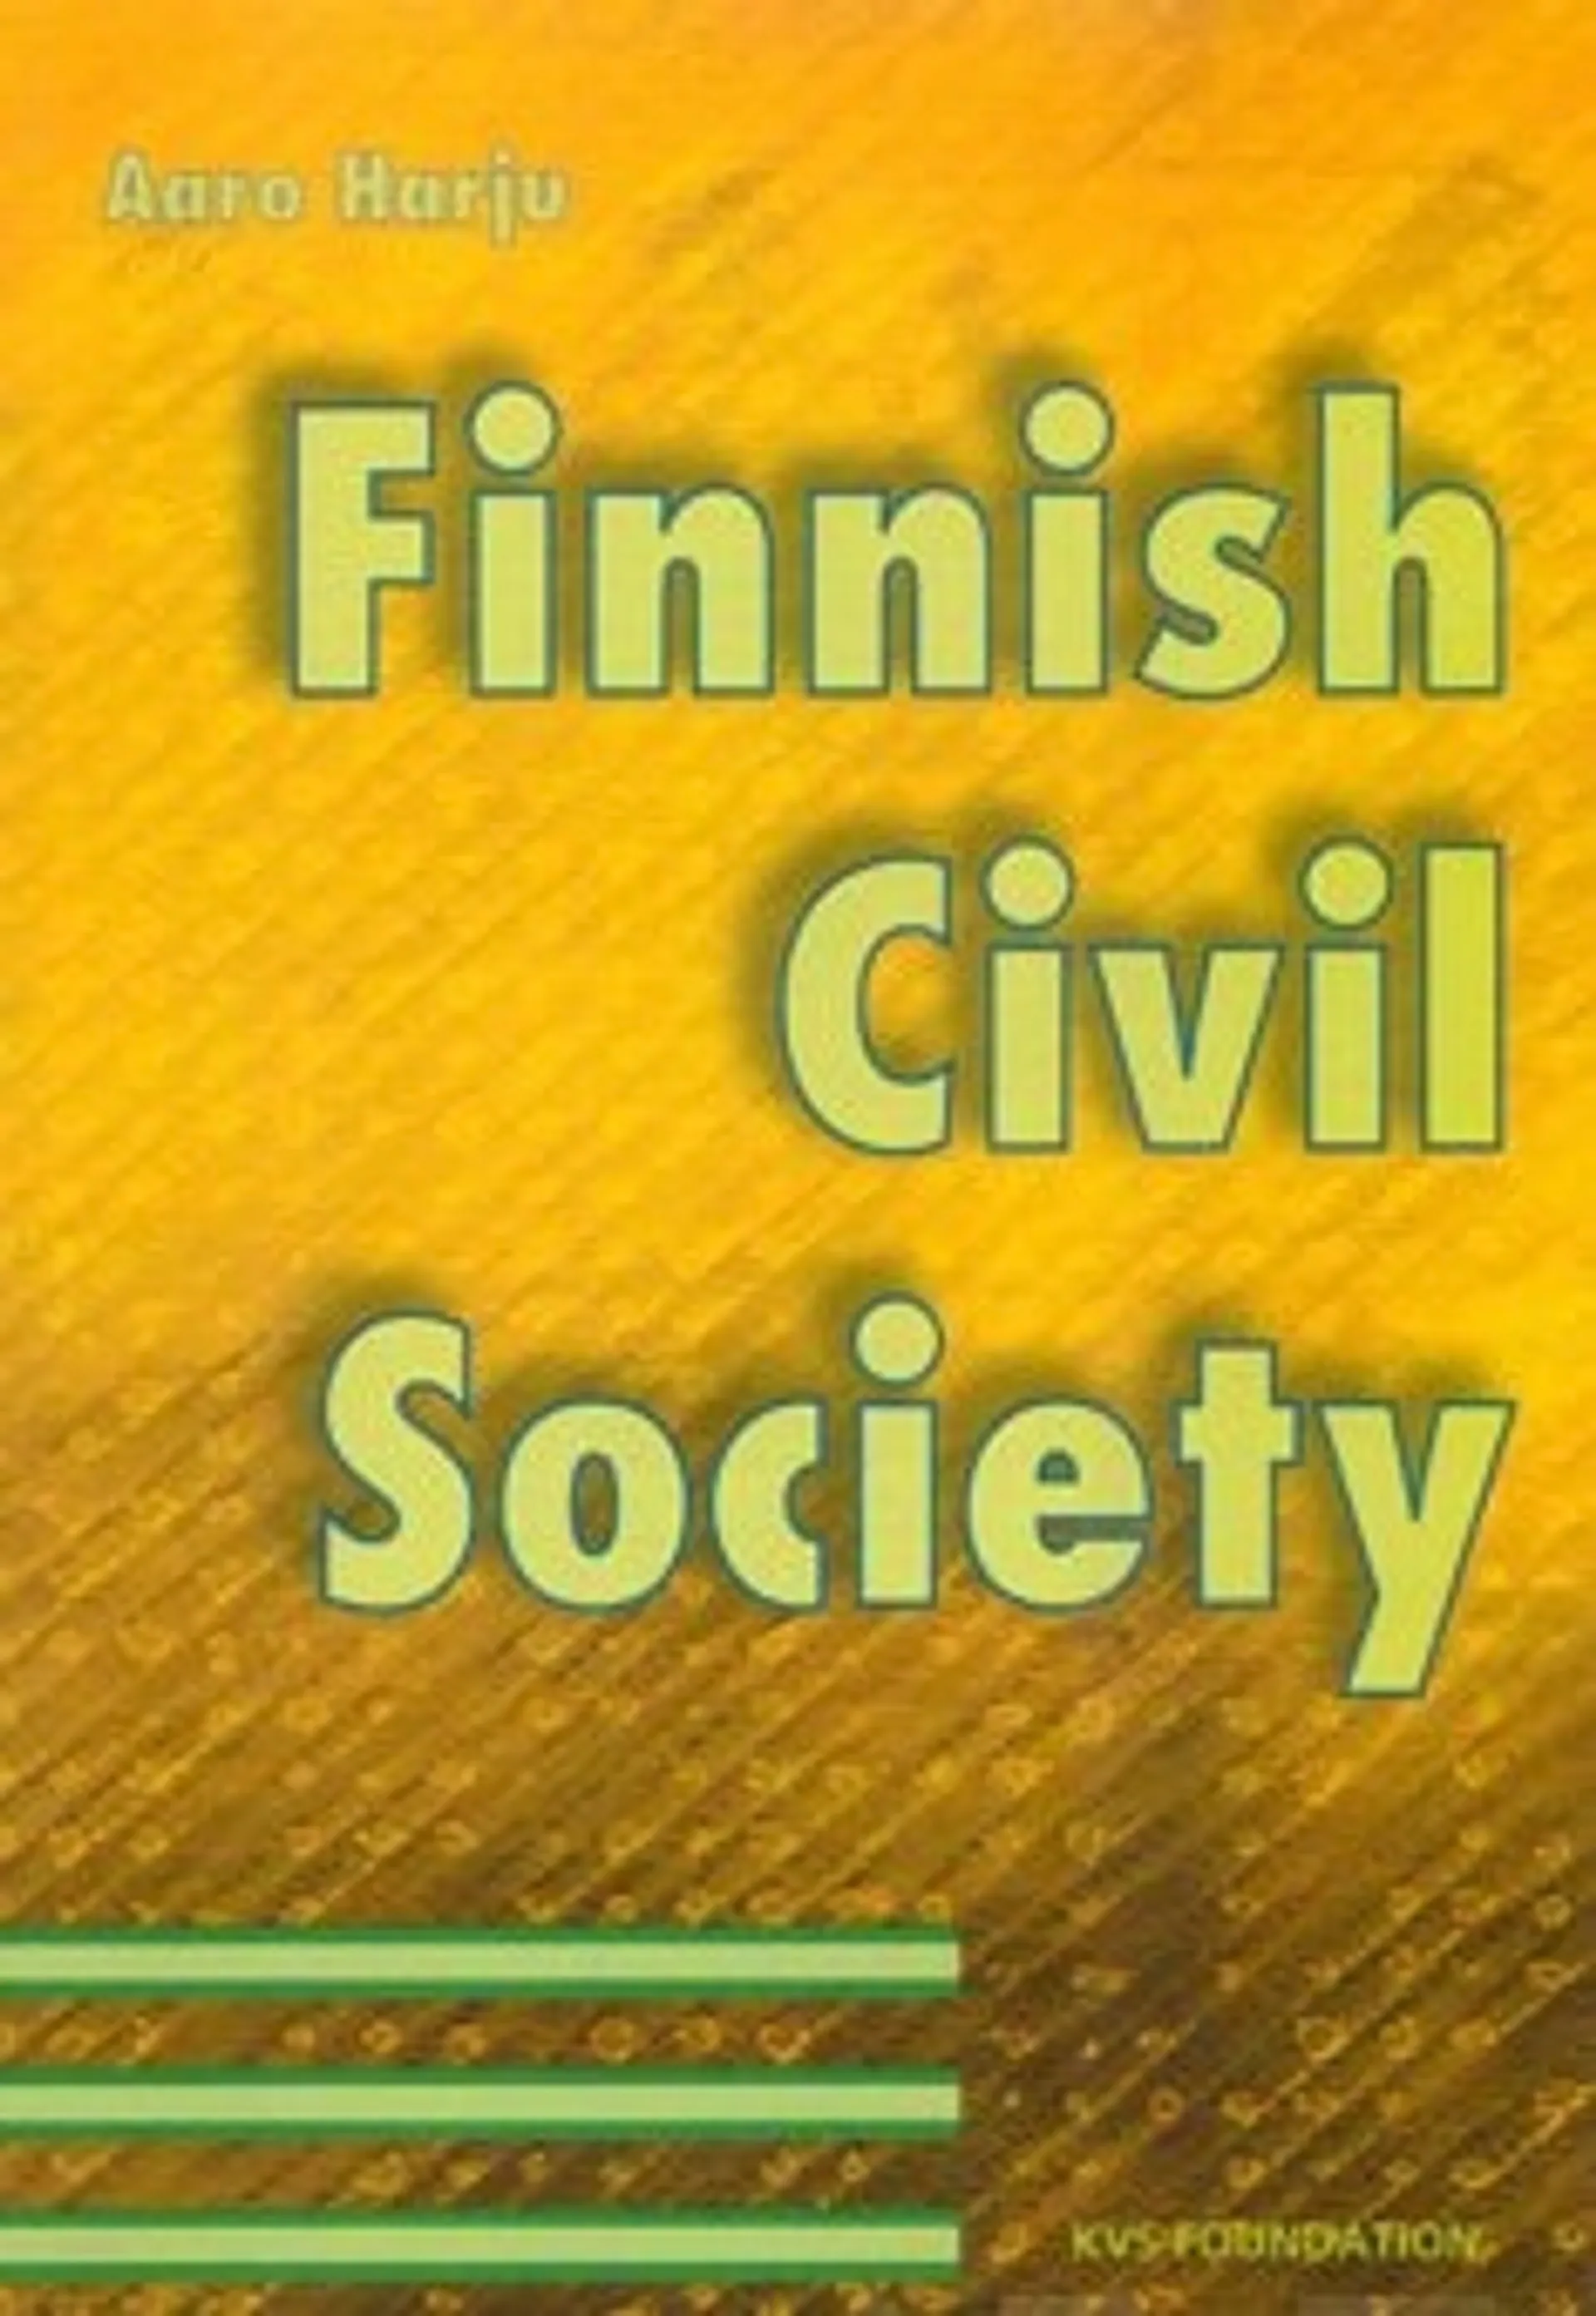 Finnish civil society